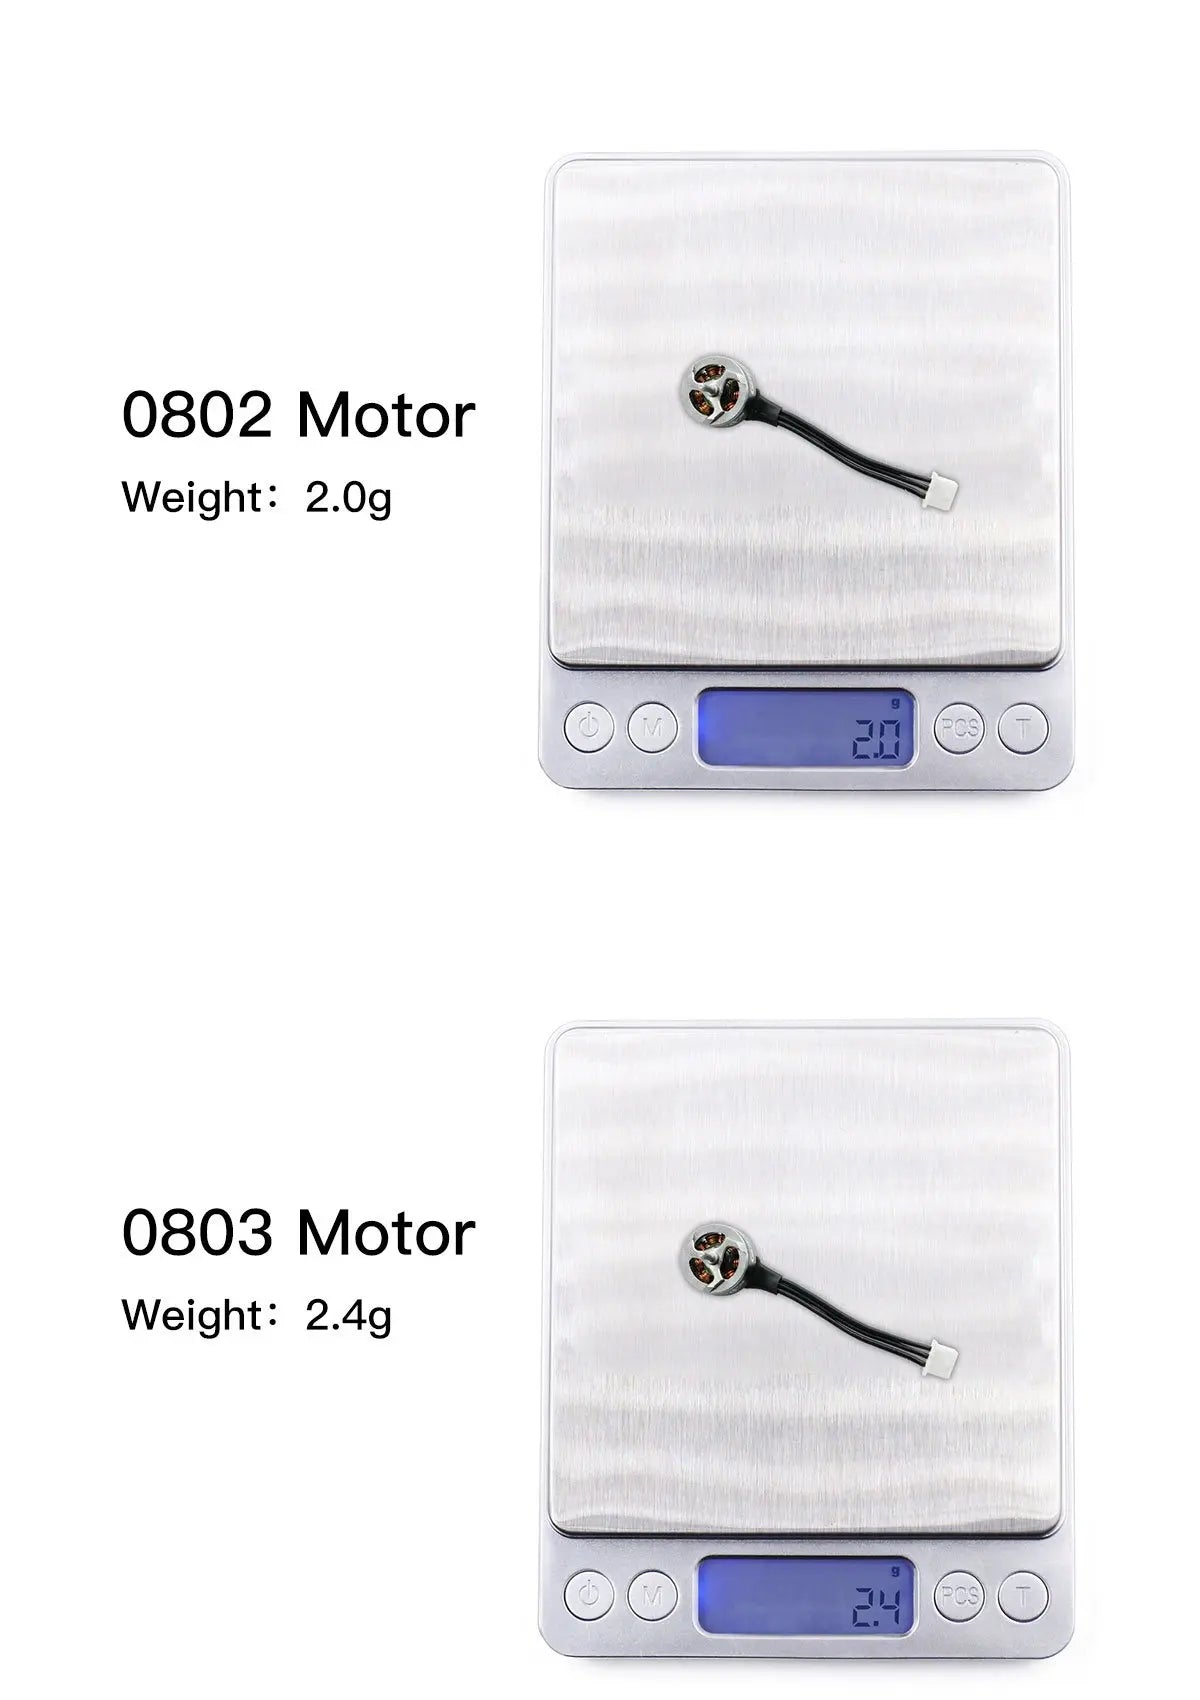 0802 Motor Weight: 2.0g 0803 Motor weight: 2.4